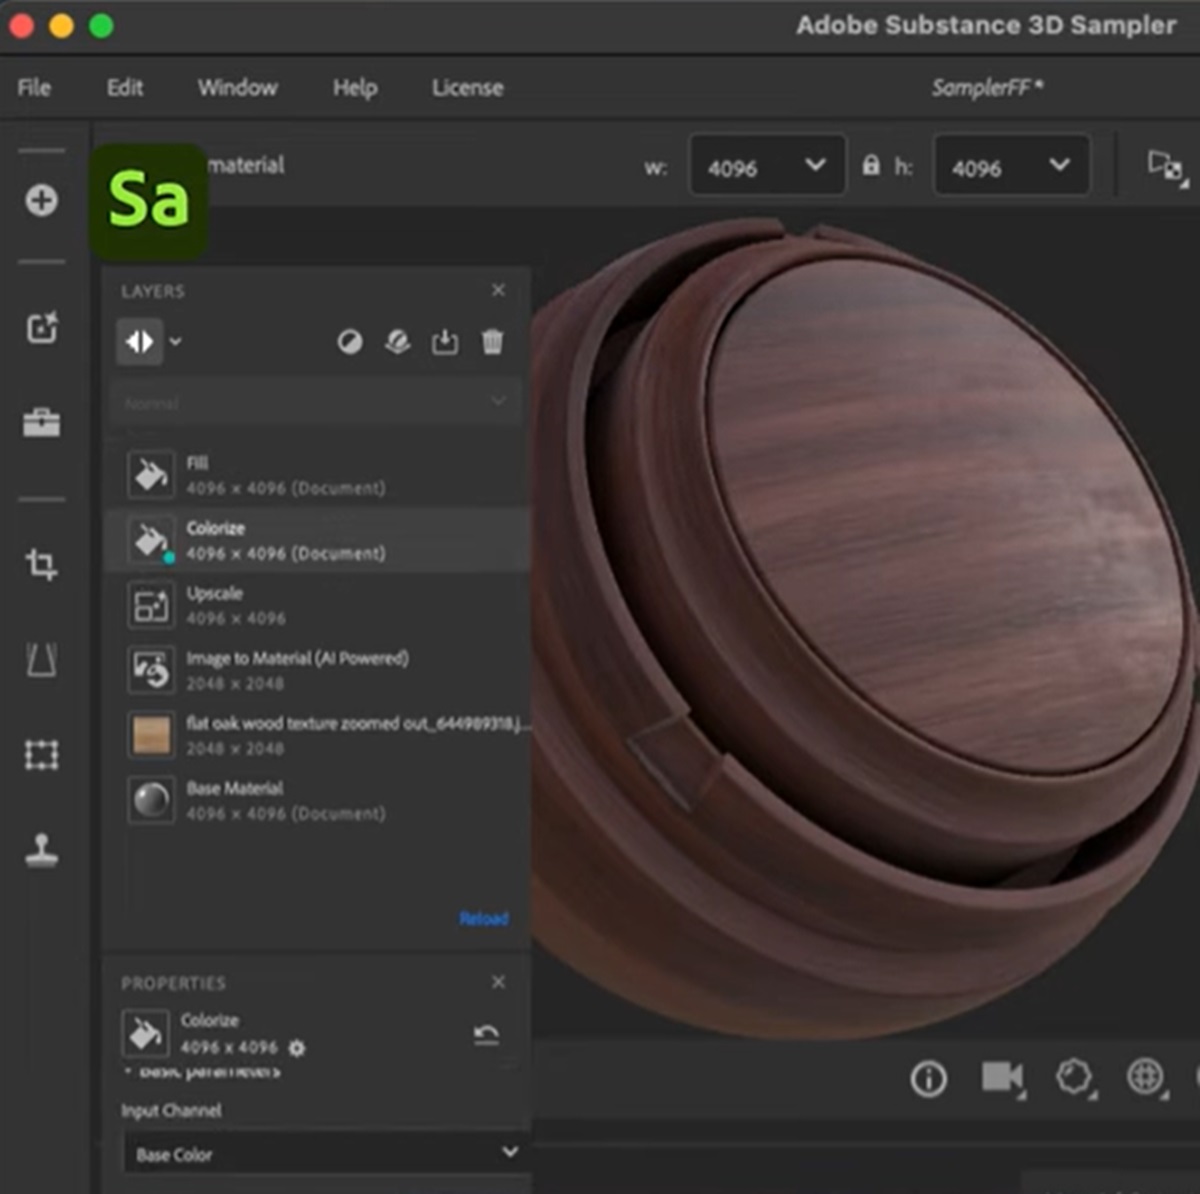 Adobe Substance 3D Sampler (źródło: Adobe Substance 3D)